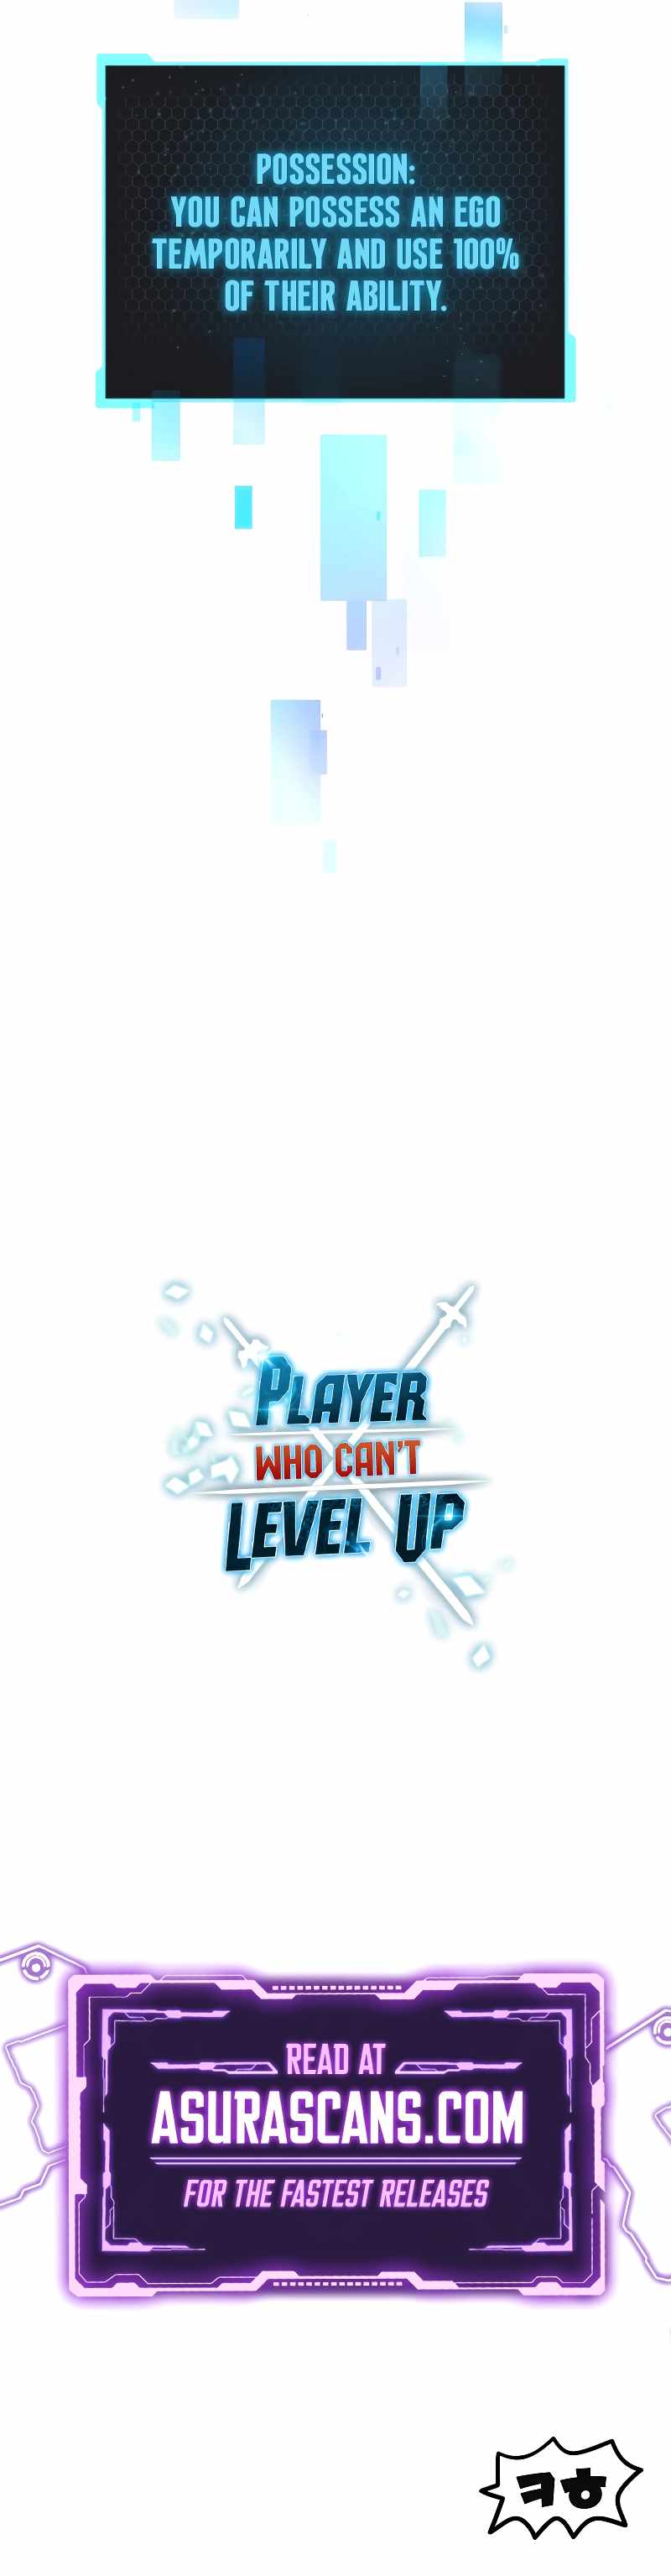 read Player Who Can’t Level Up Chapter 144 Manga Online Free at Mangabuddy, MangaNato,Manhwatop | MangaSo.com